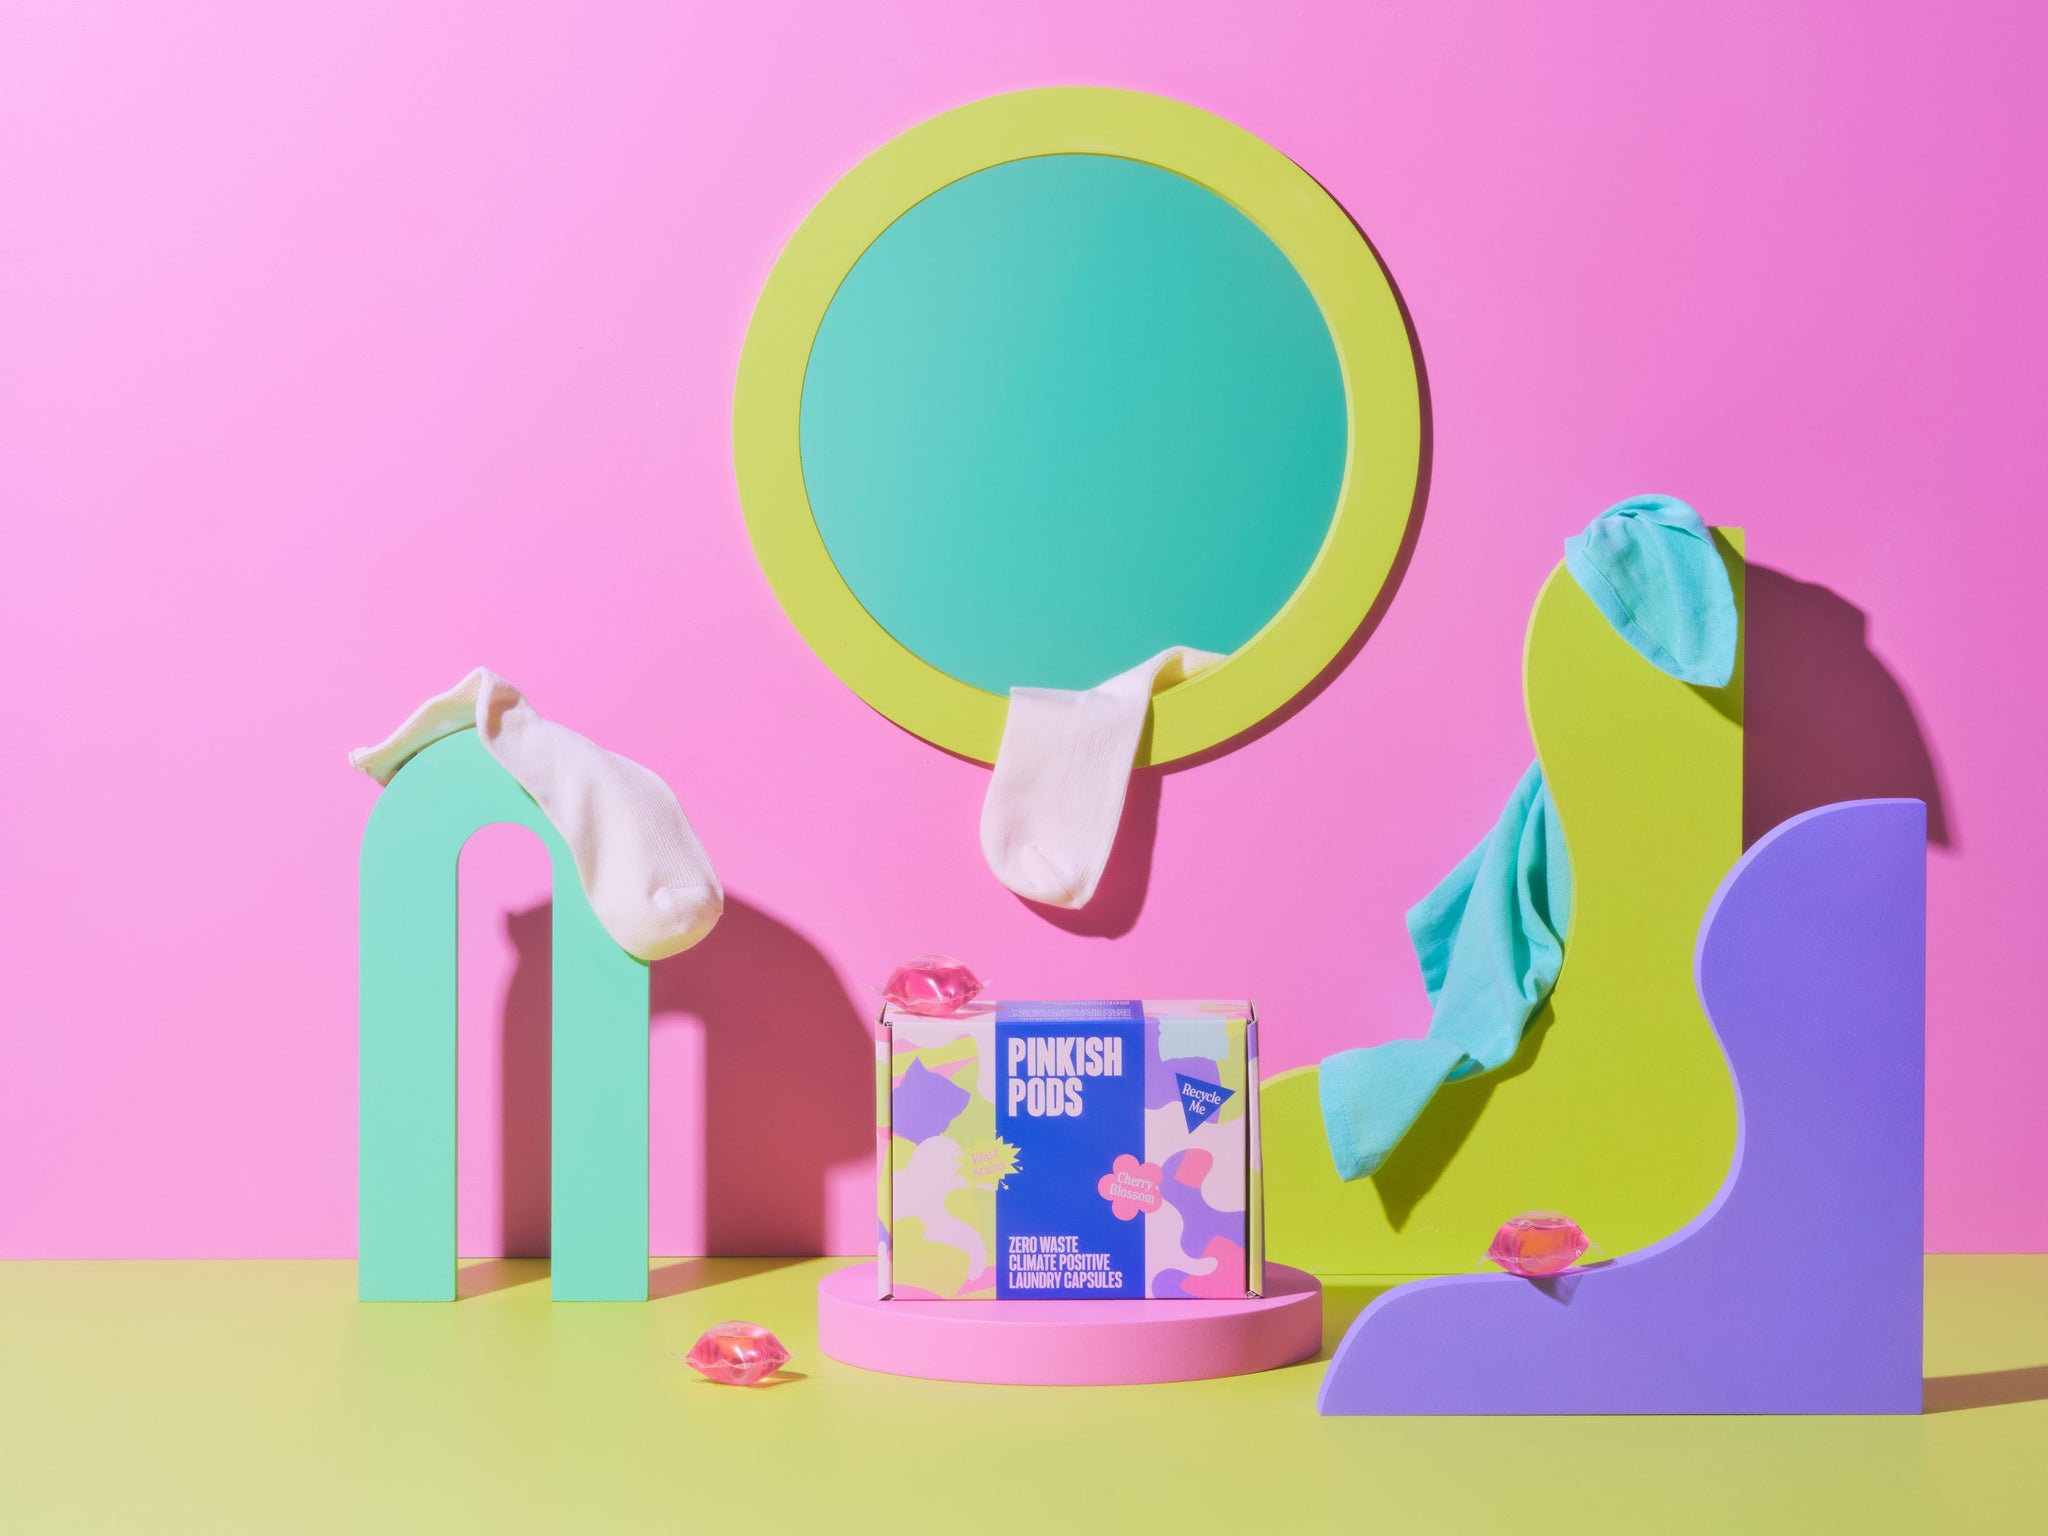 Pink Small Laundry Powder Storage Bin – UrbanPinkCollective